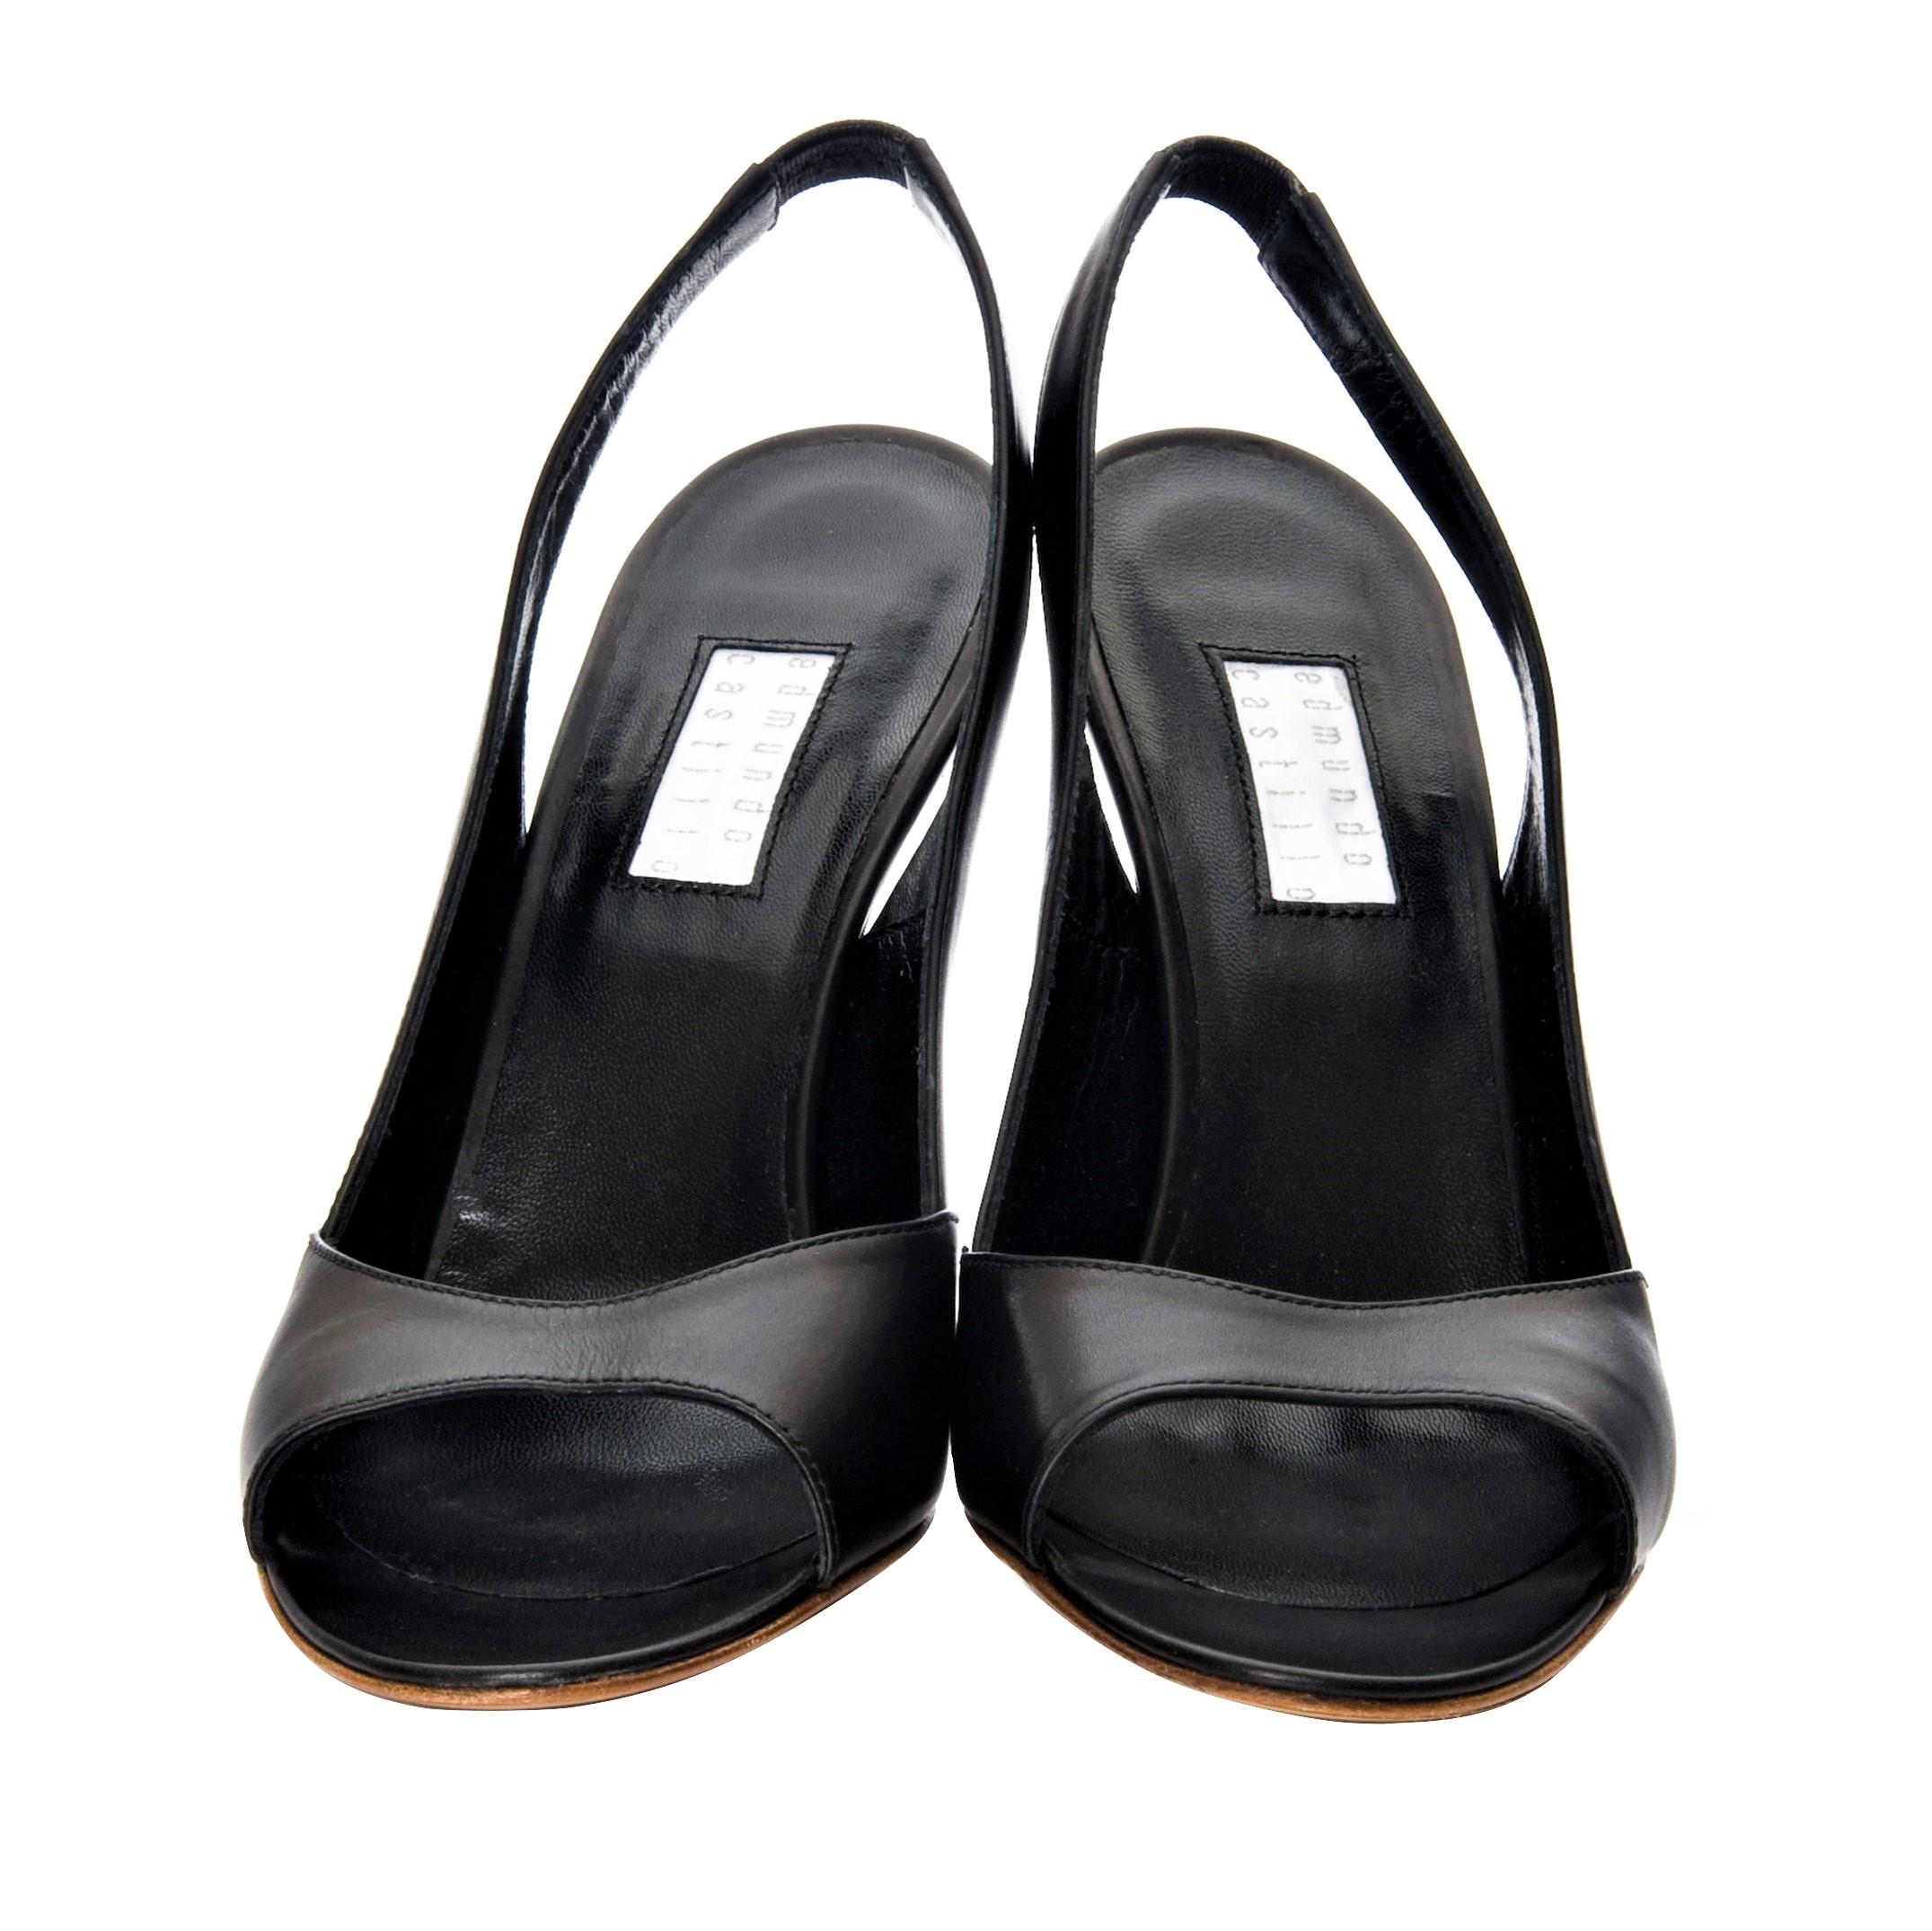 New Edmundo Castillo Black Leather Sling Heels 1